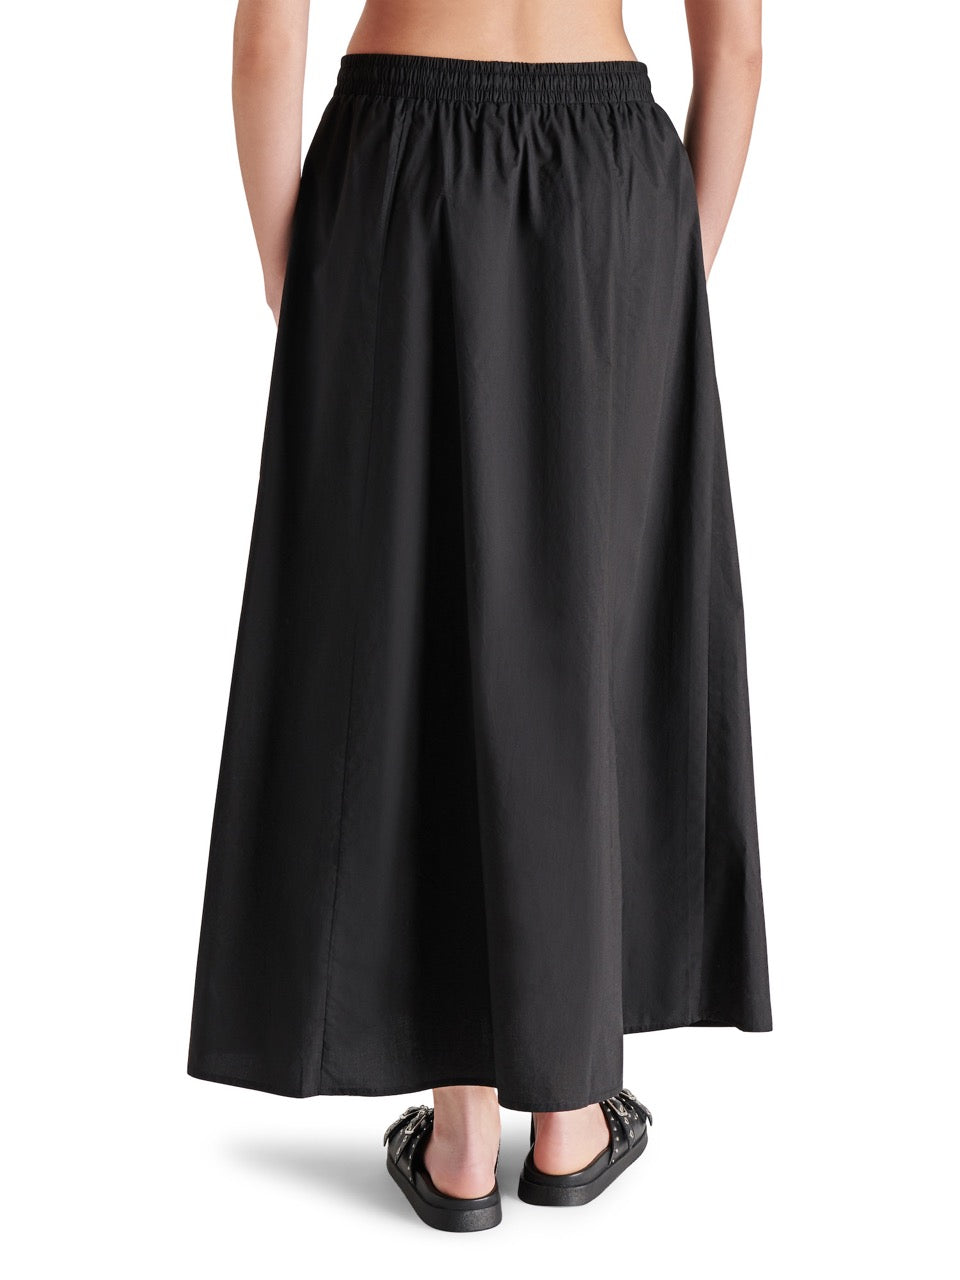 steve madden sunny maxi skirt in black-back view